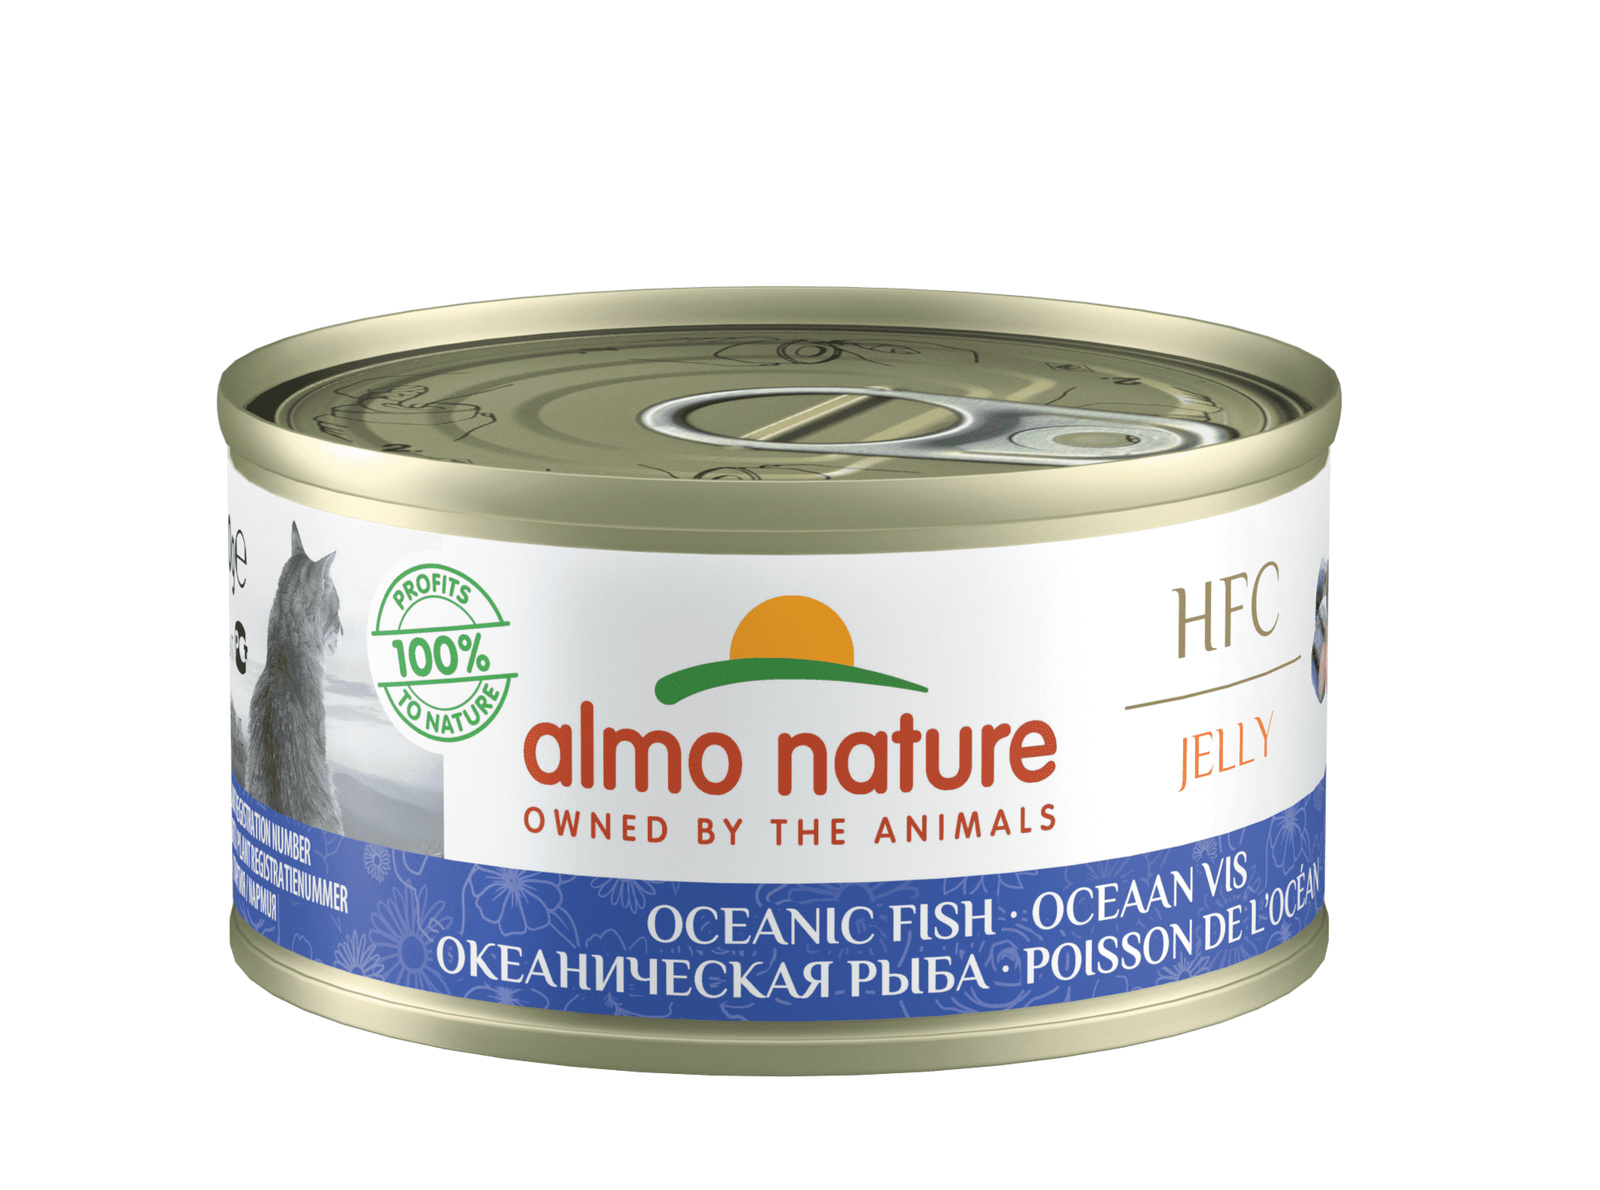 Almo Nature консервы Almo Nature консервы с океанической рыбой в желе для кошек (70 г) almo nature консервы almo nature консервы со скумбрией в желе для кошек 70 г